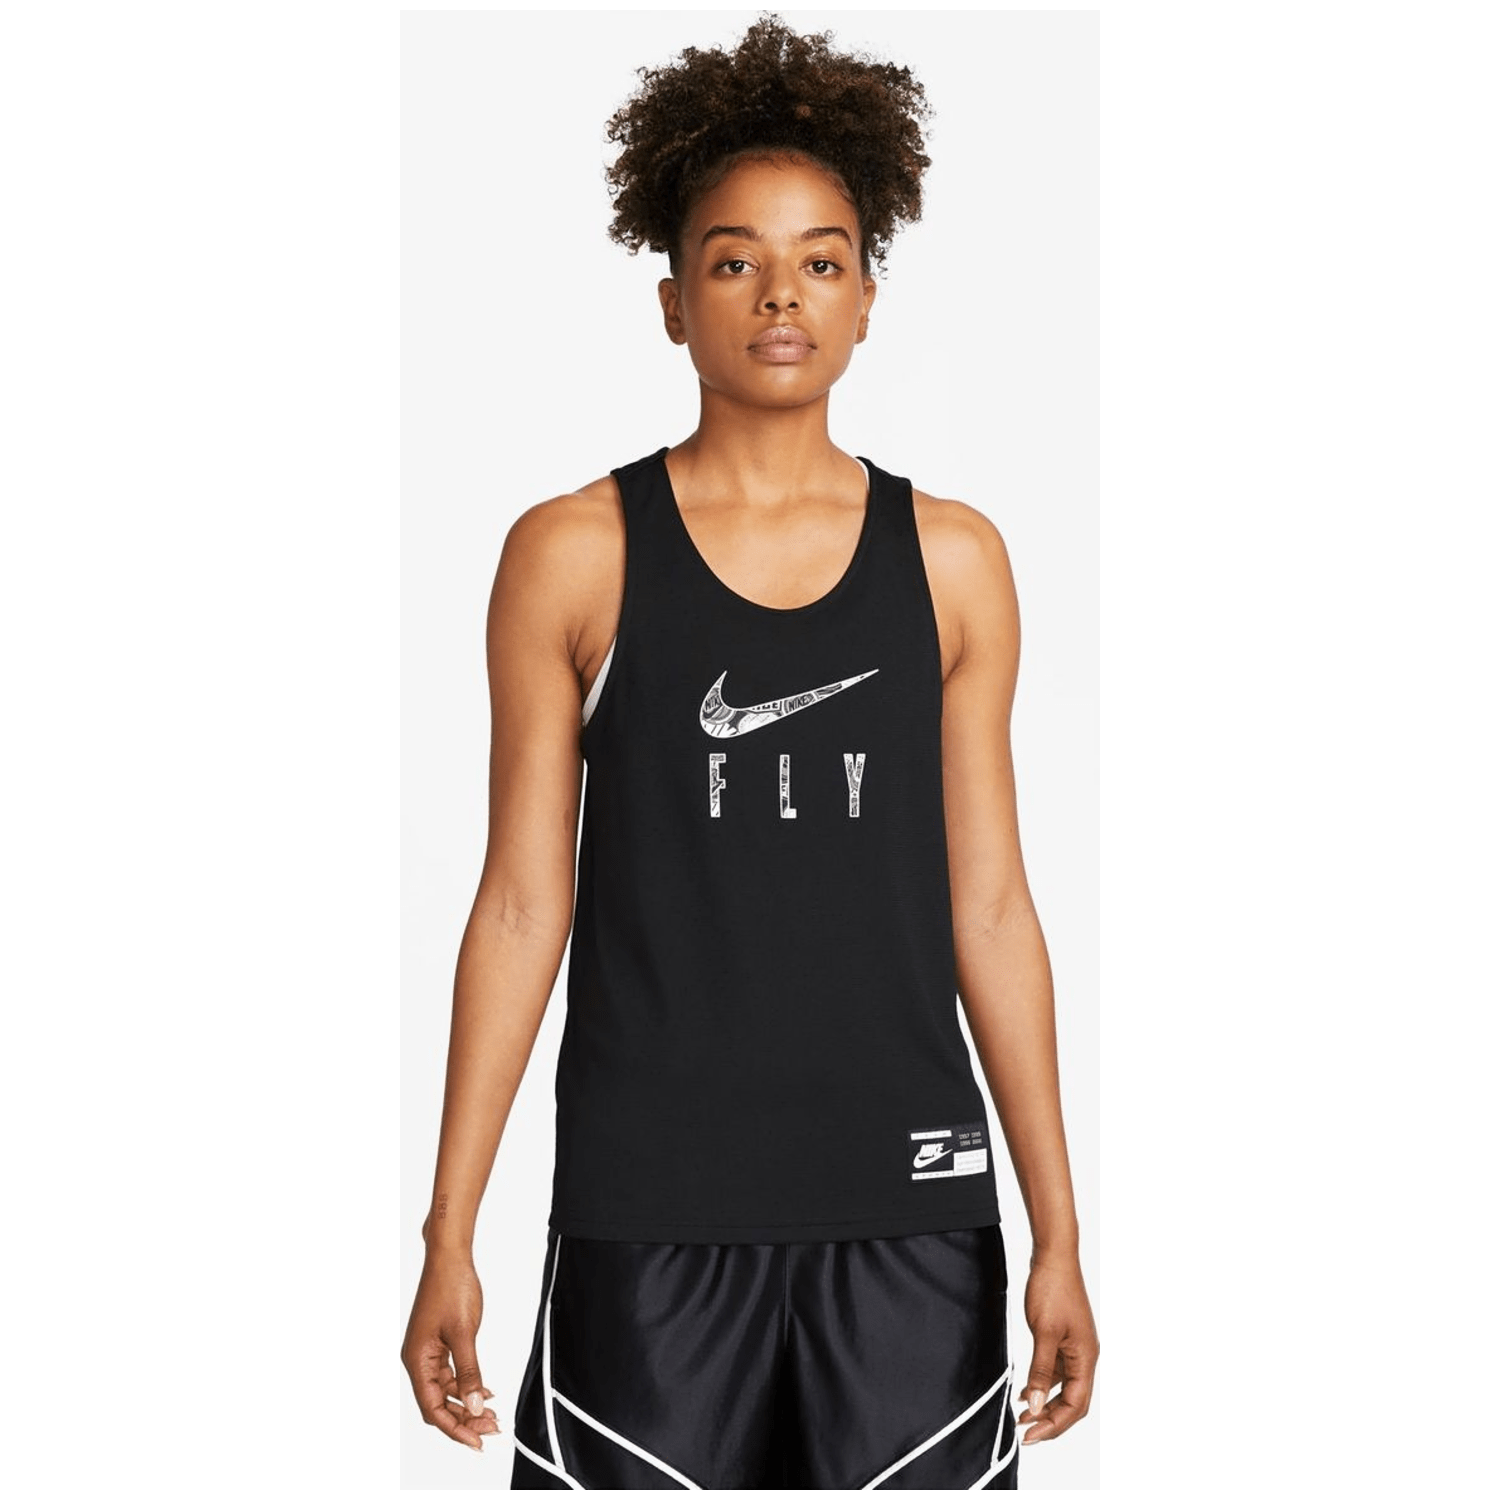 Nike Dri-Fit Standard Issue Damen Trikot